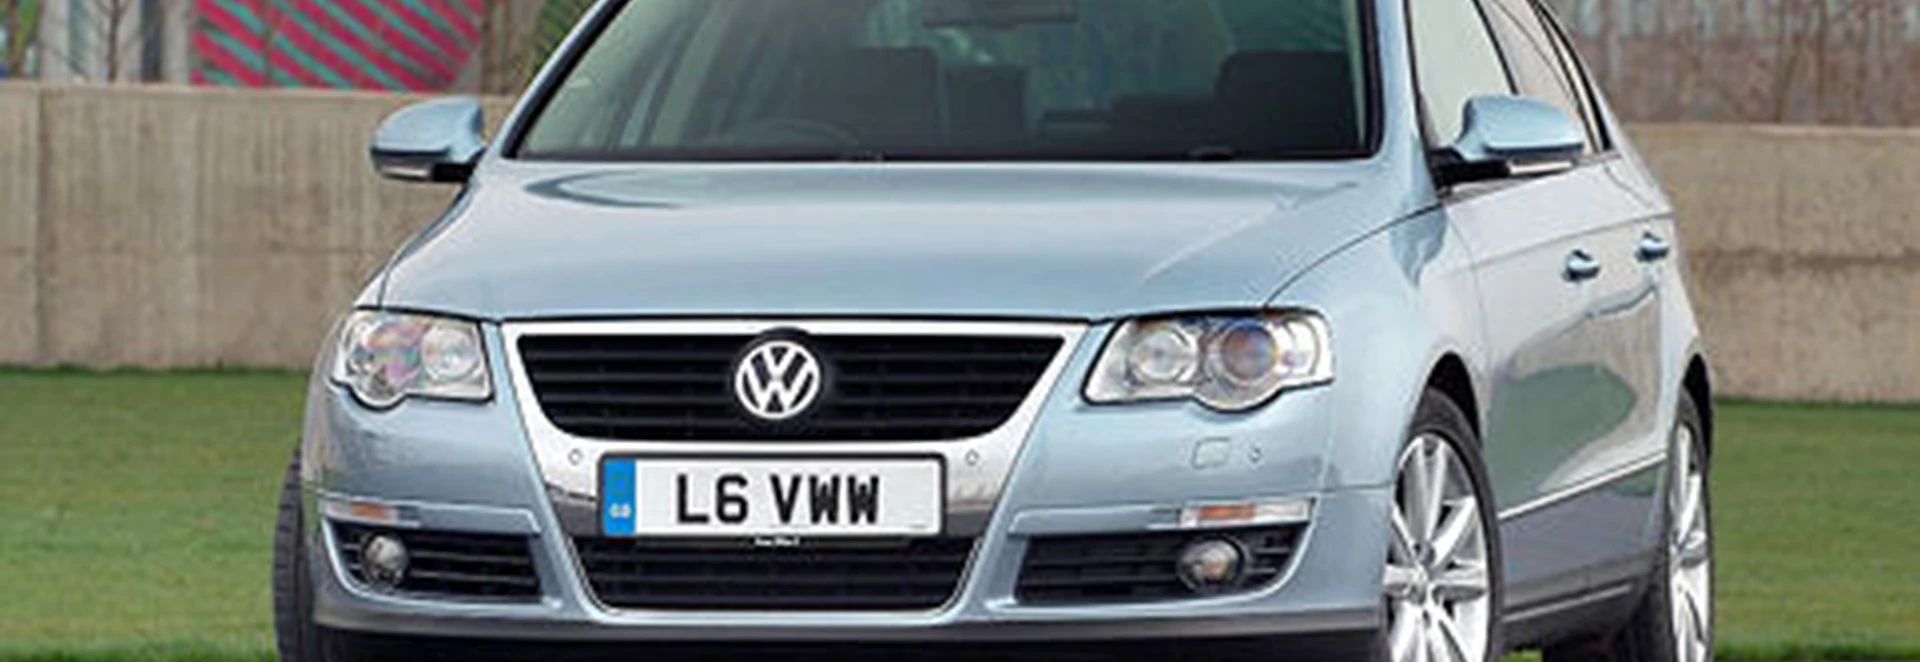 Volkswagen Passat 2.0 SE TDI (2005) 